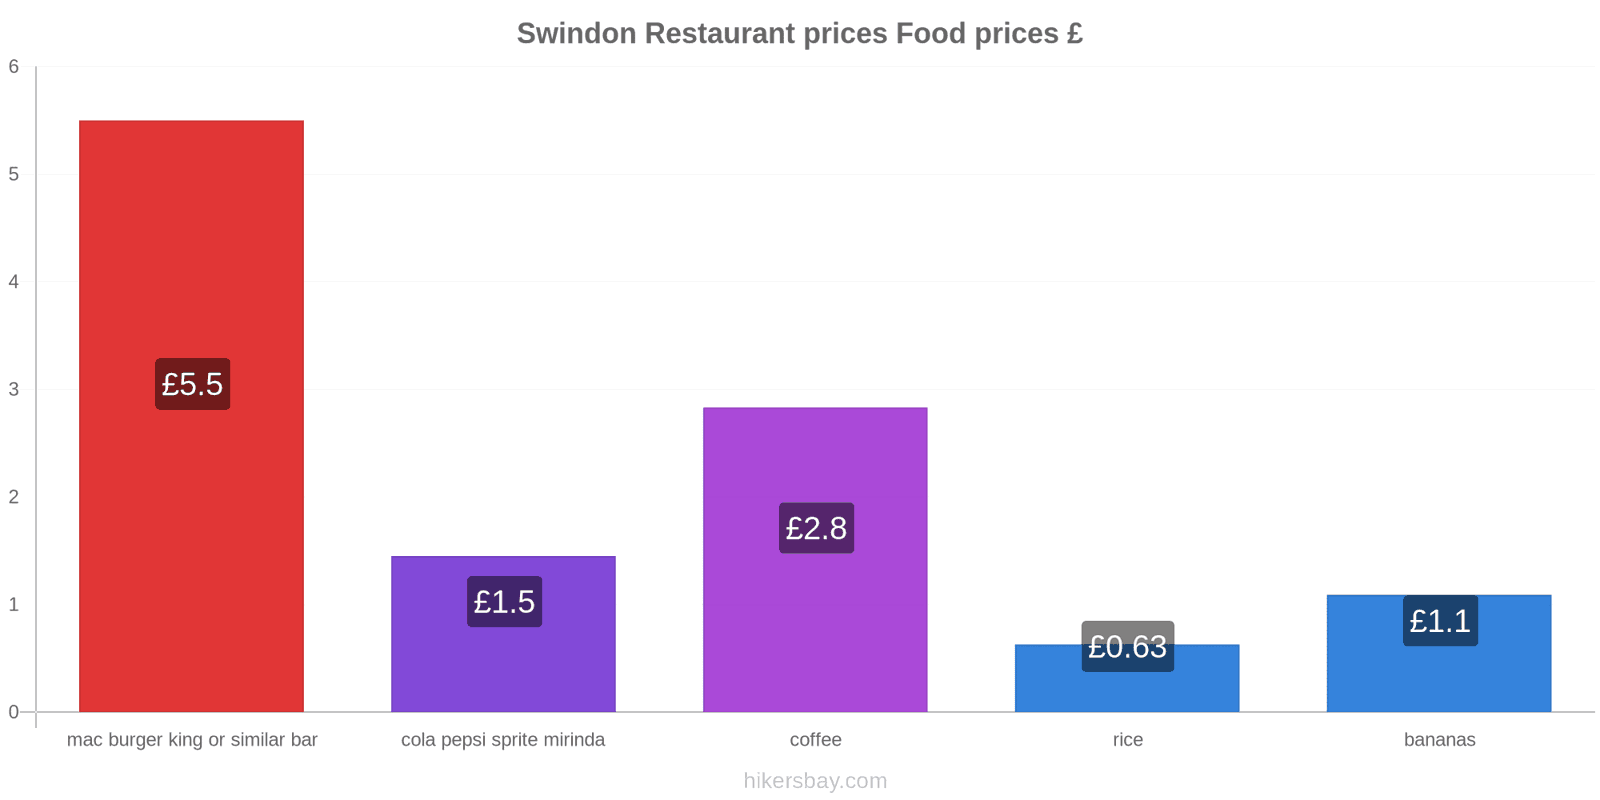 Swindon price changes hikersbay.com